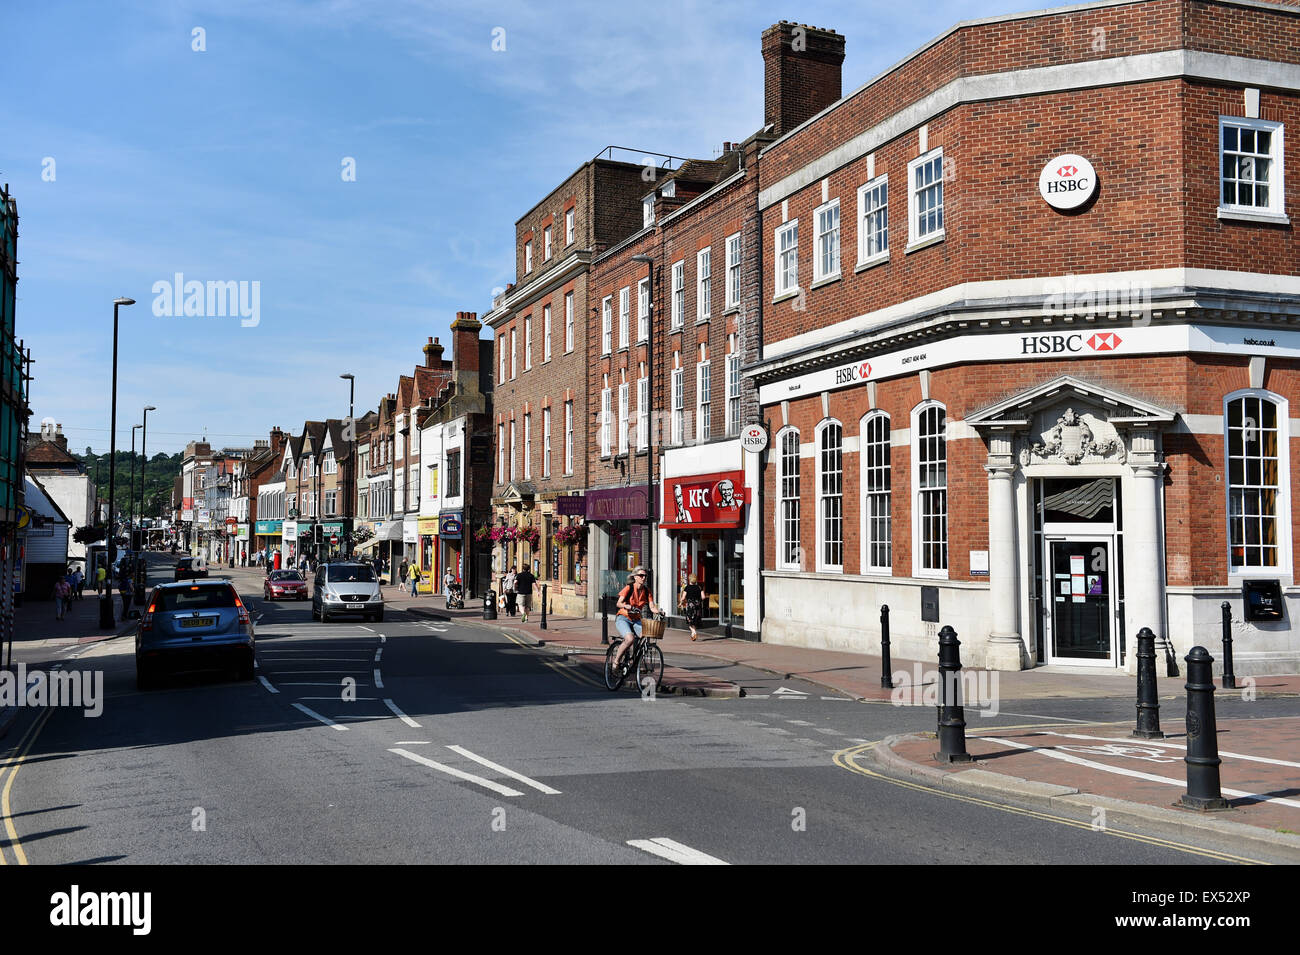 Tonbridge Kent England UK - La rue principale avec la banque HSBC sur l'angle Banque D'Images